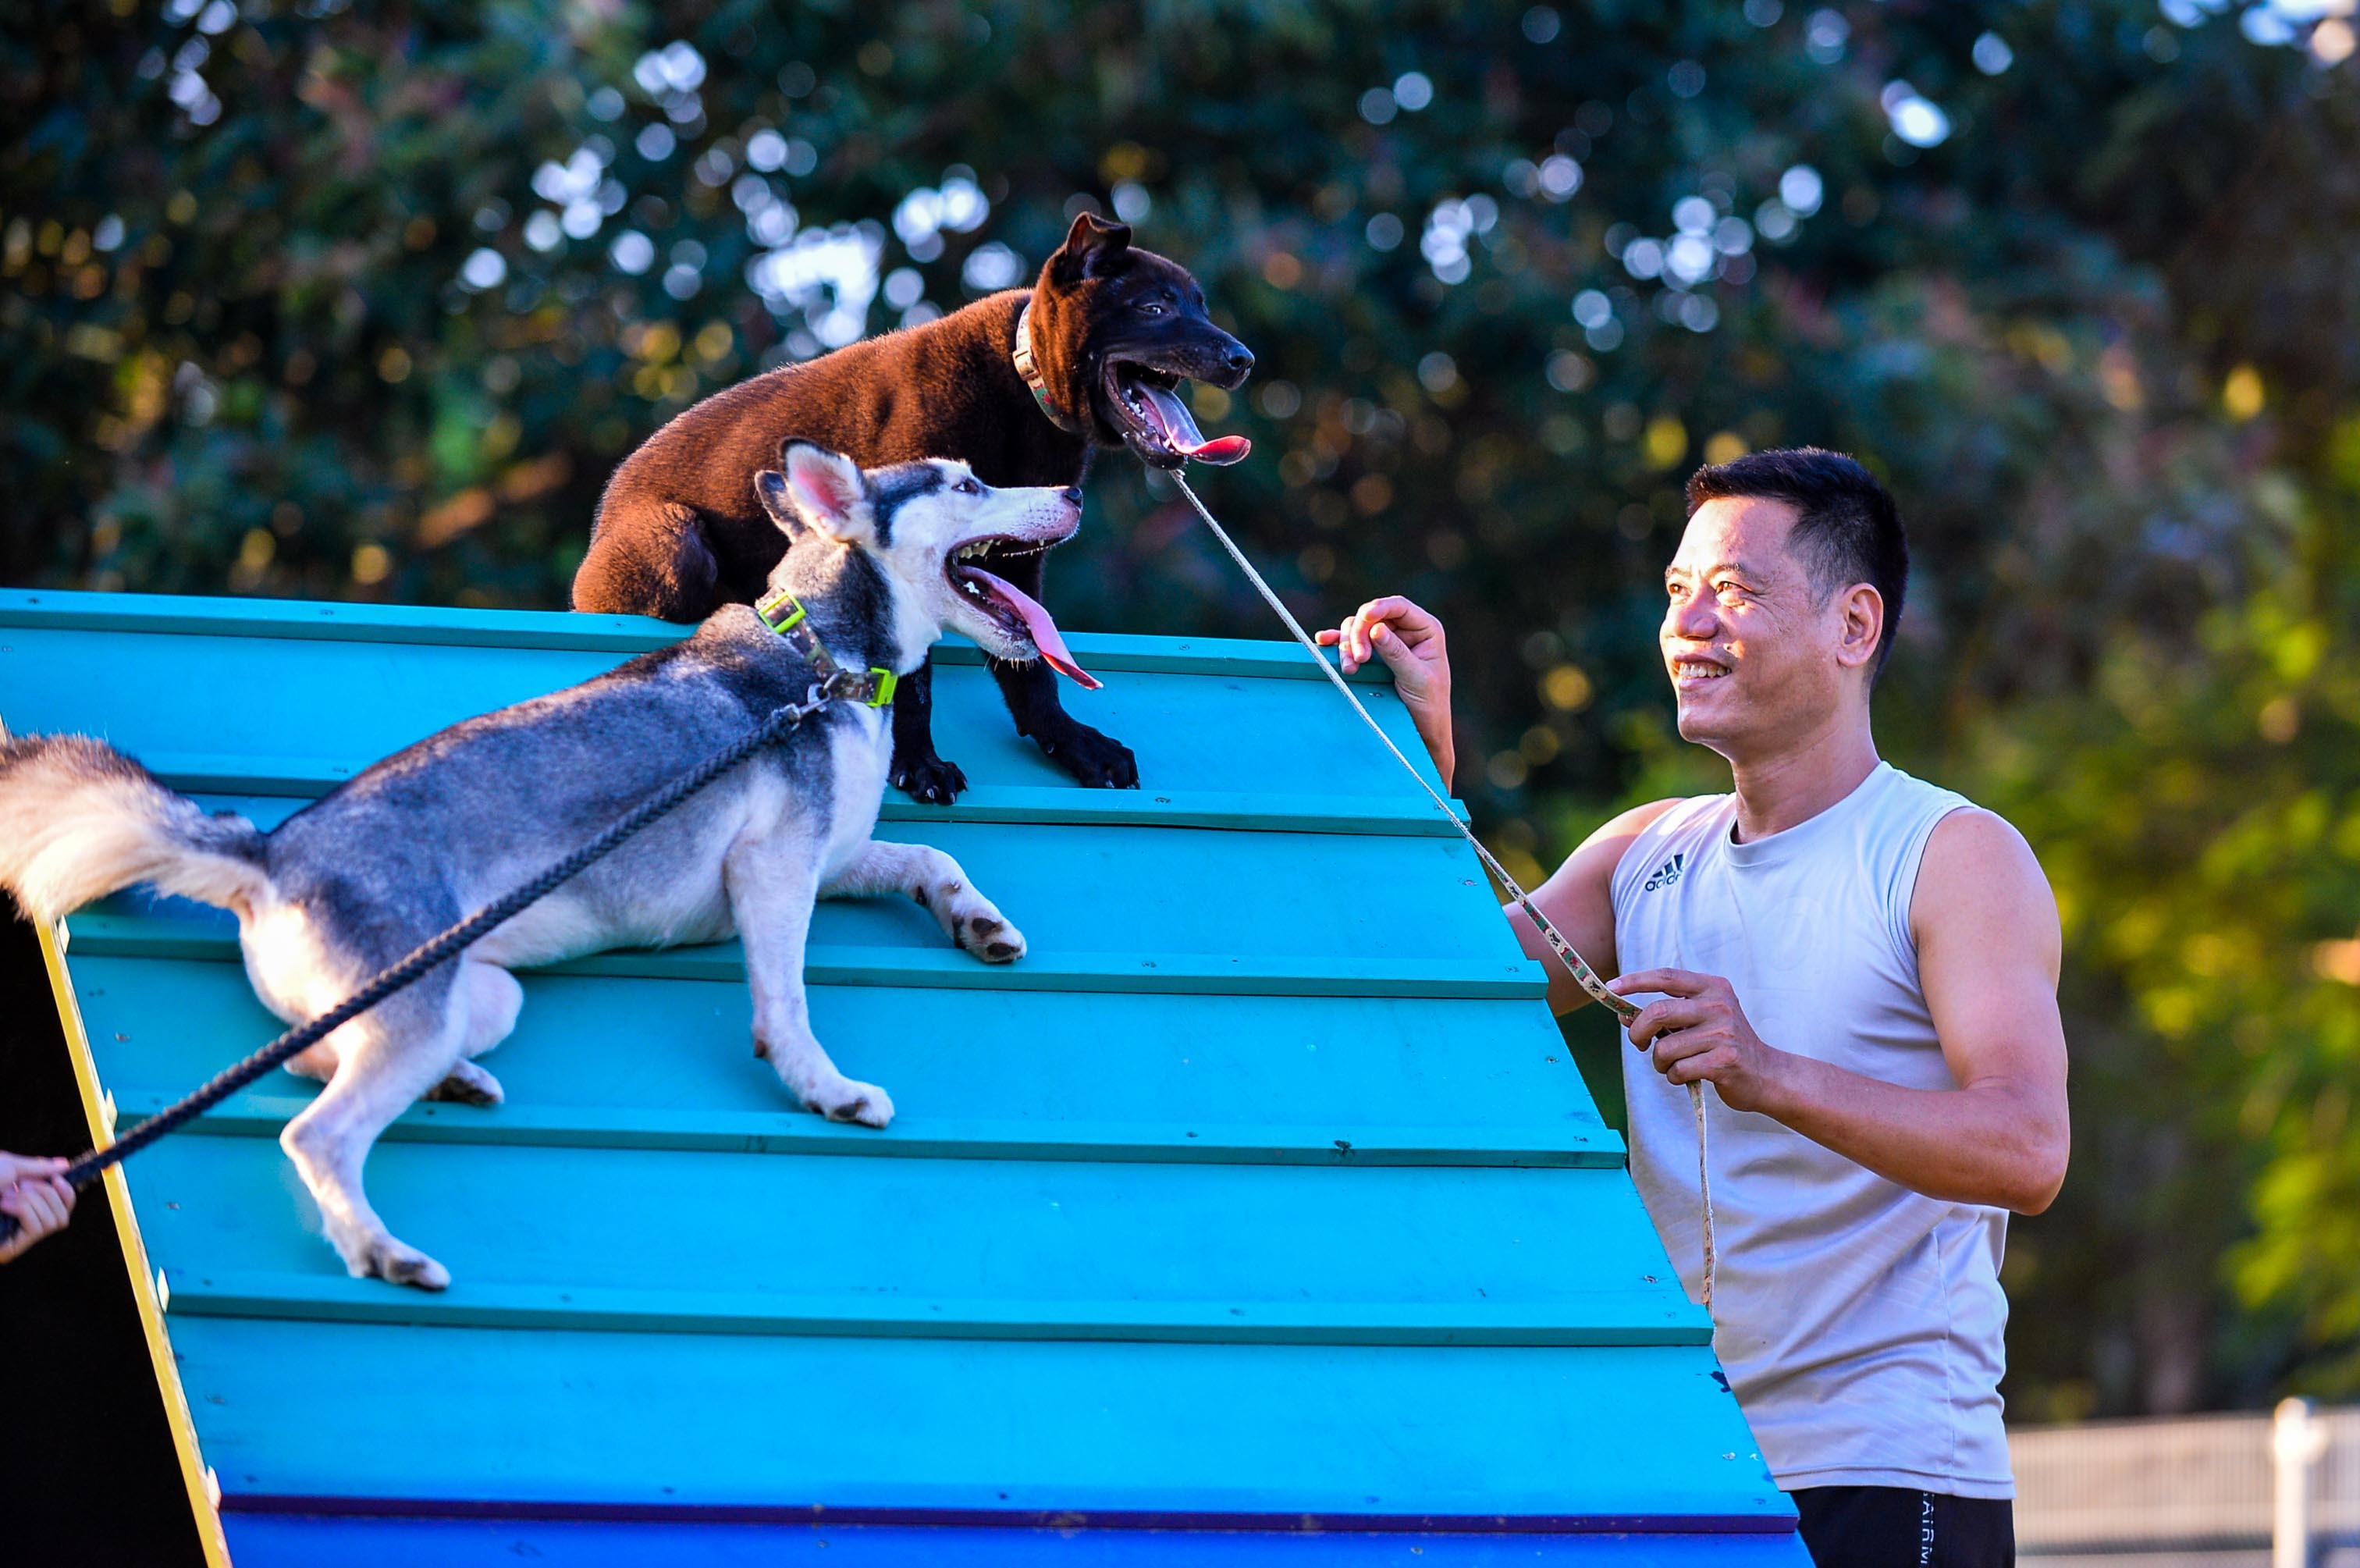 Nhà gần công viên, anh Vũ Trường Đông (45 tuổi) mới biết bên trong có khu vực dành riêng cho chó và đã dắt theo hai chú chó là Mật và Mun đến vui chơi. 